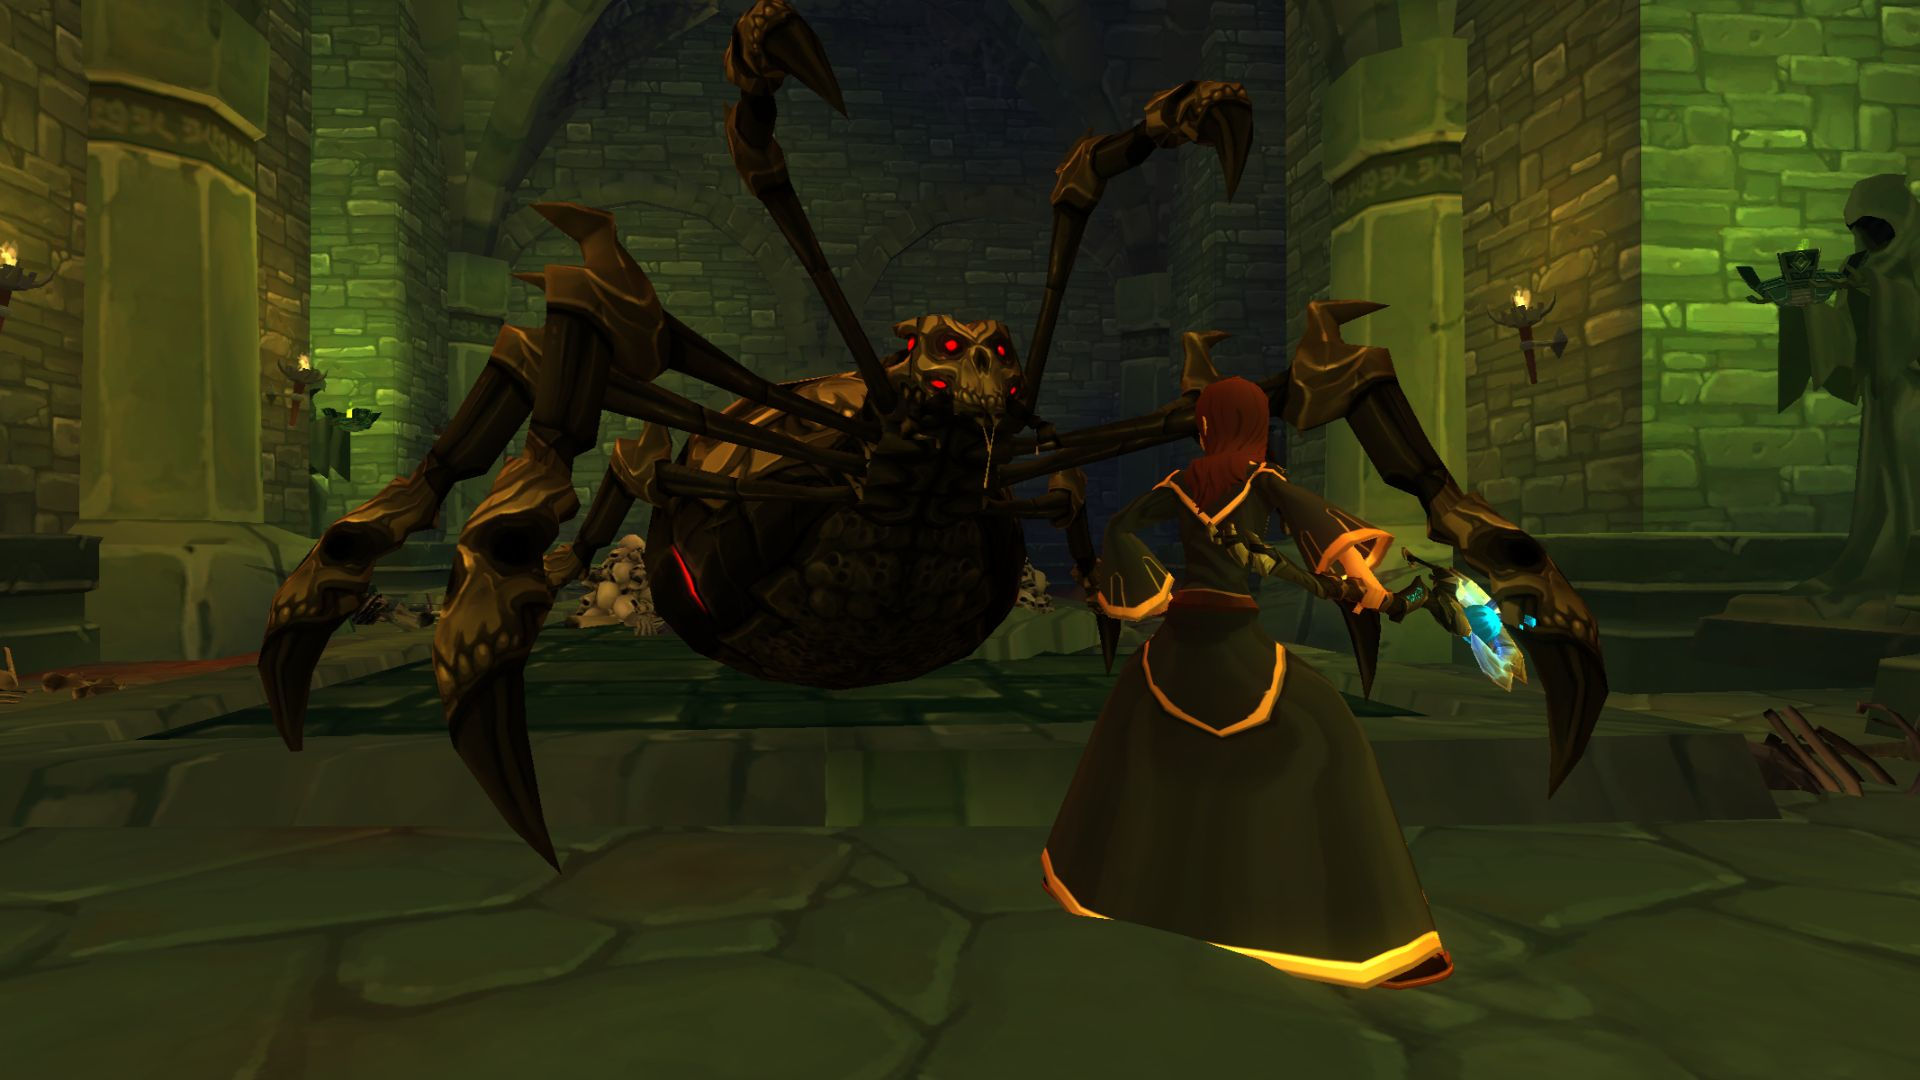 Mejores mmorpgs móviles: Adventure Quest 3d. La imagen muestra un mago a punto de luchar contra una araña gigante con una cabeza de calavera